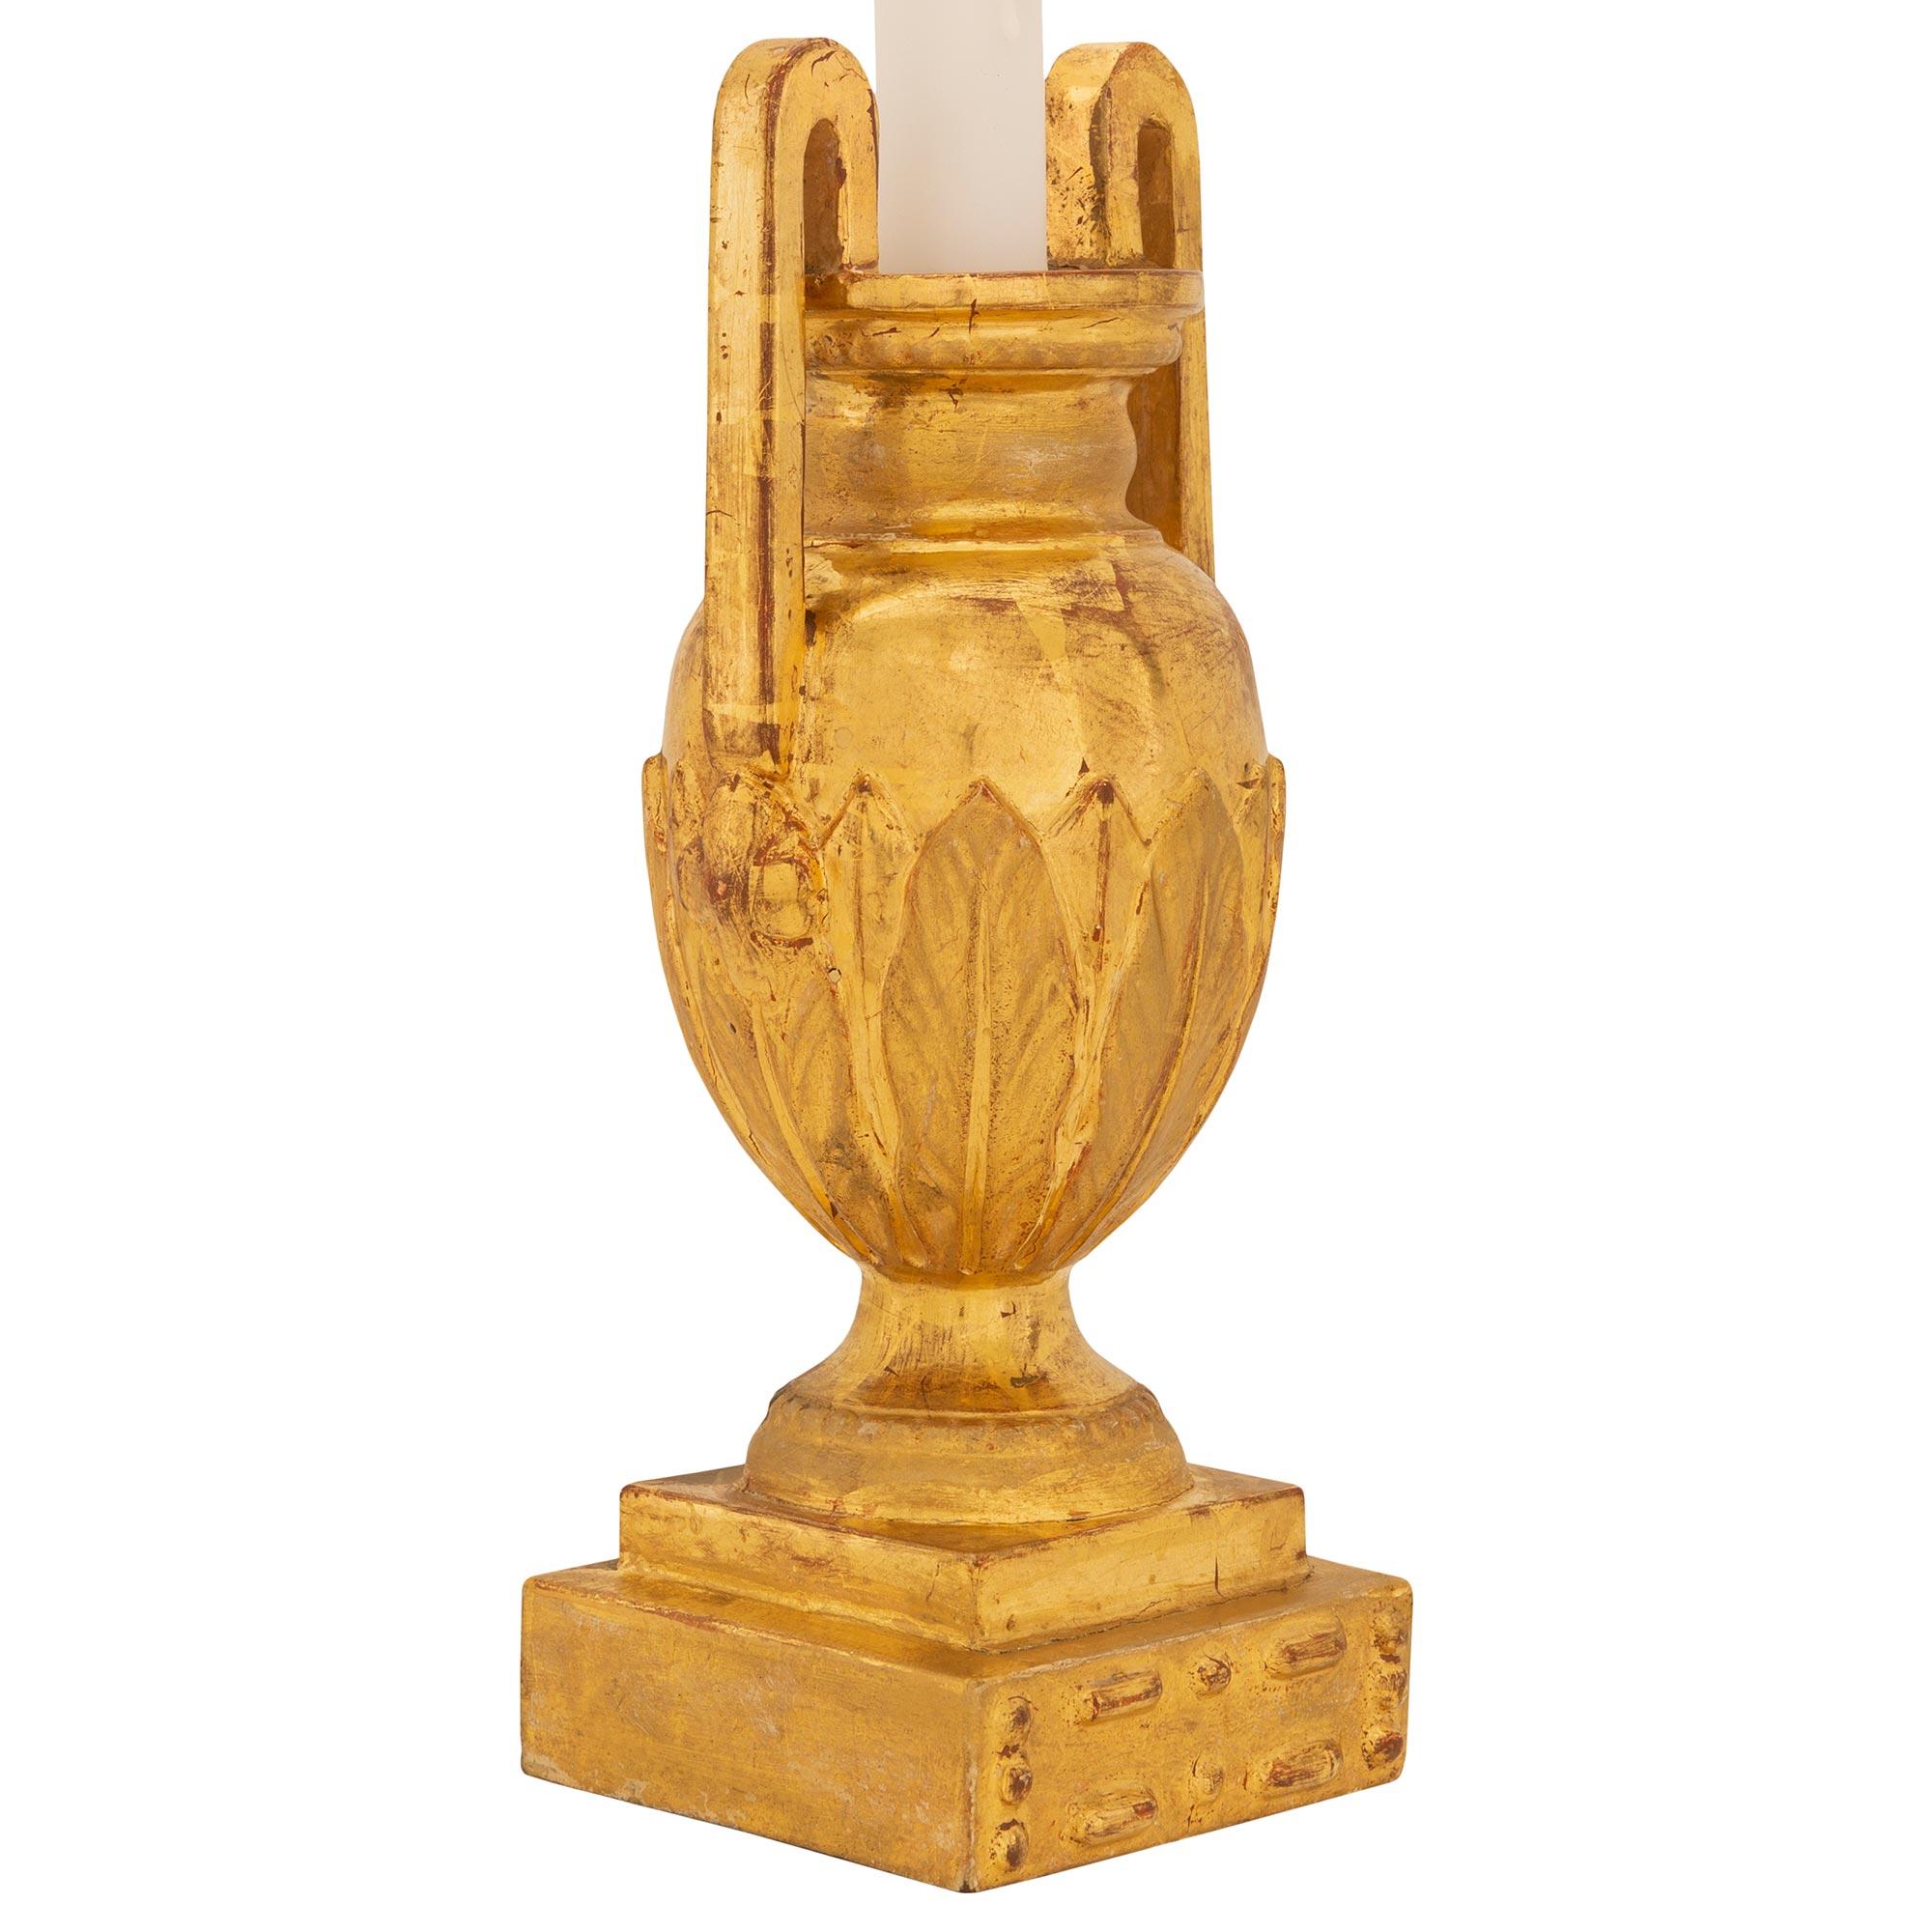 Une charmante paire de lampes italiennes du 19ème siècle en bois doré de style Louis XVI. Chaque lampe est surélevée par une base carrée avec des motifs perlés finement sculptés sous le support du piédestal en forme de socle. L'élégant corps en